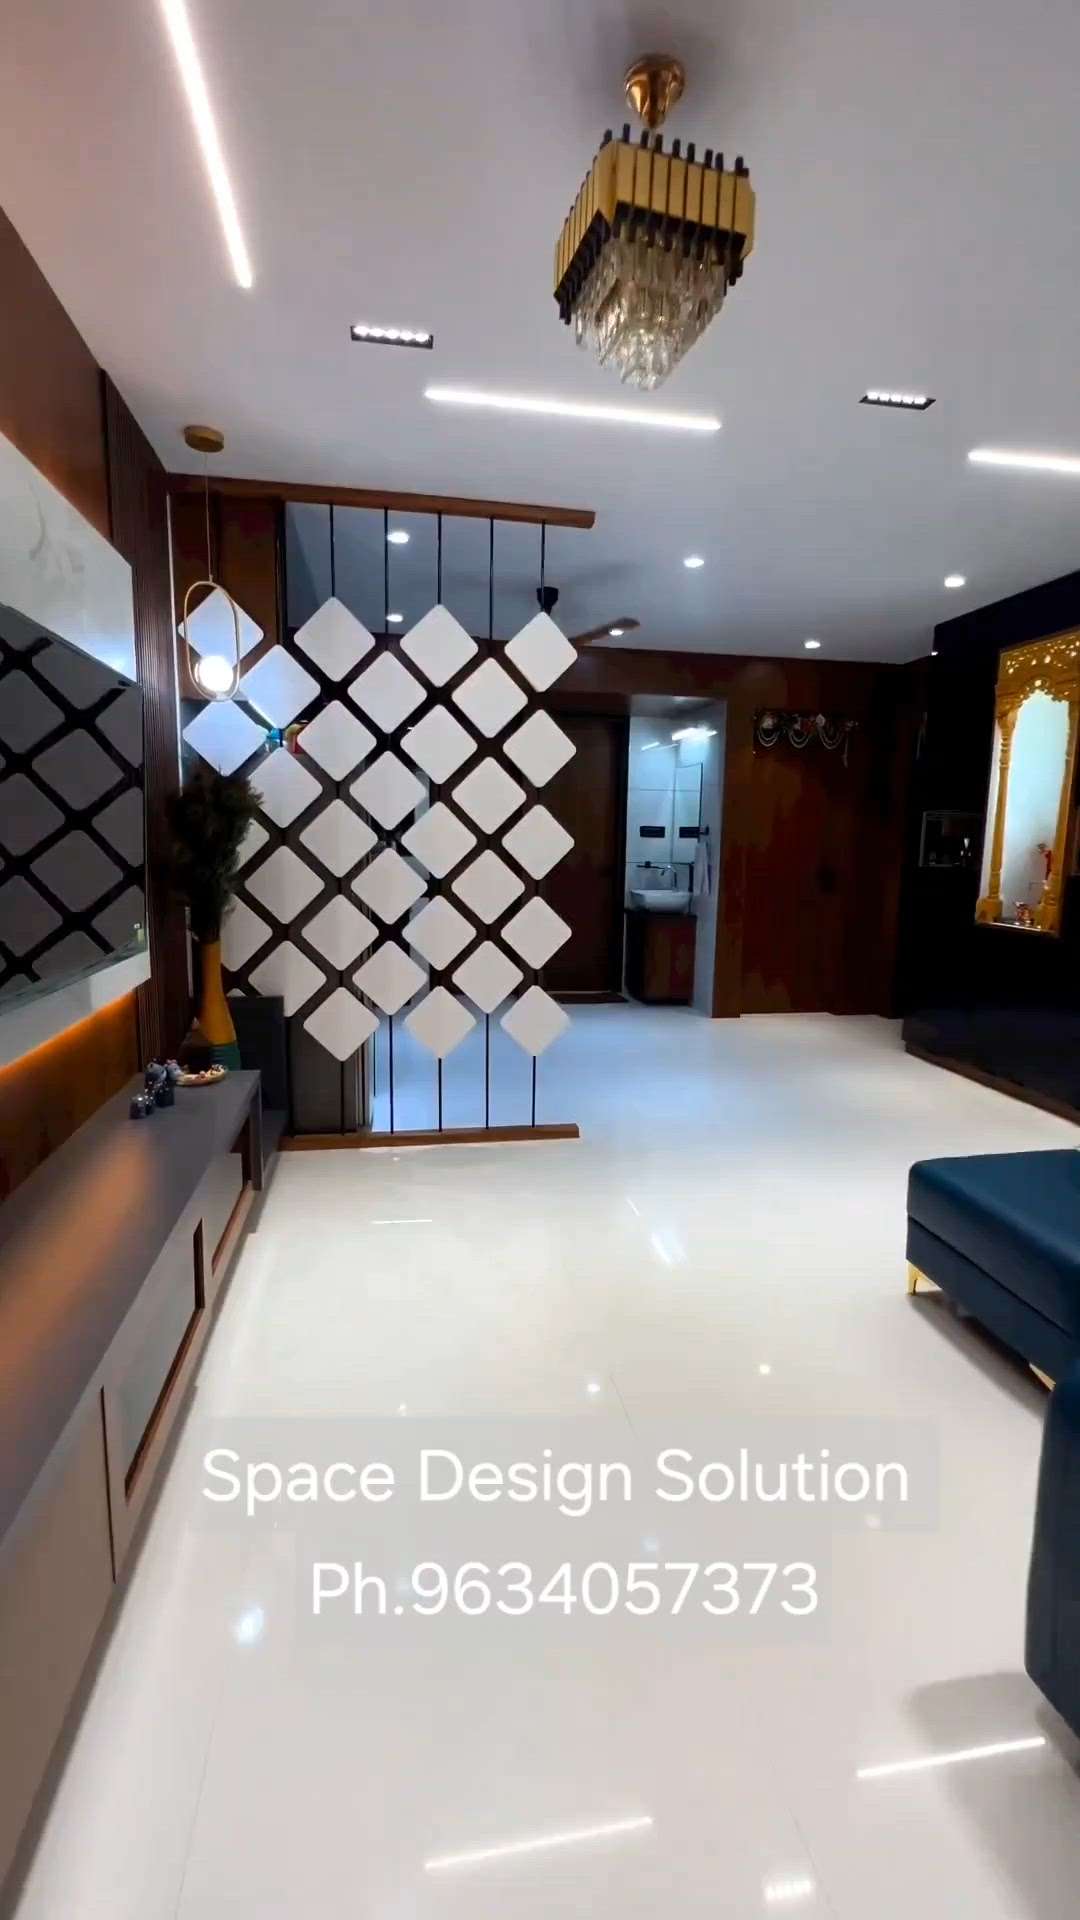 #luxuryinterior#luxurylifestyle #luxury #luxuryhomes #interiordesigner #interiorstyling #arcitecture 
#Project#Modern#Architecture#Jaipur#Dairies#Interior#Design
Client: Vikas Meena 
@Architect#space#design#solution#
www.spacedesignsolution.com